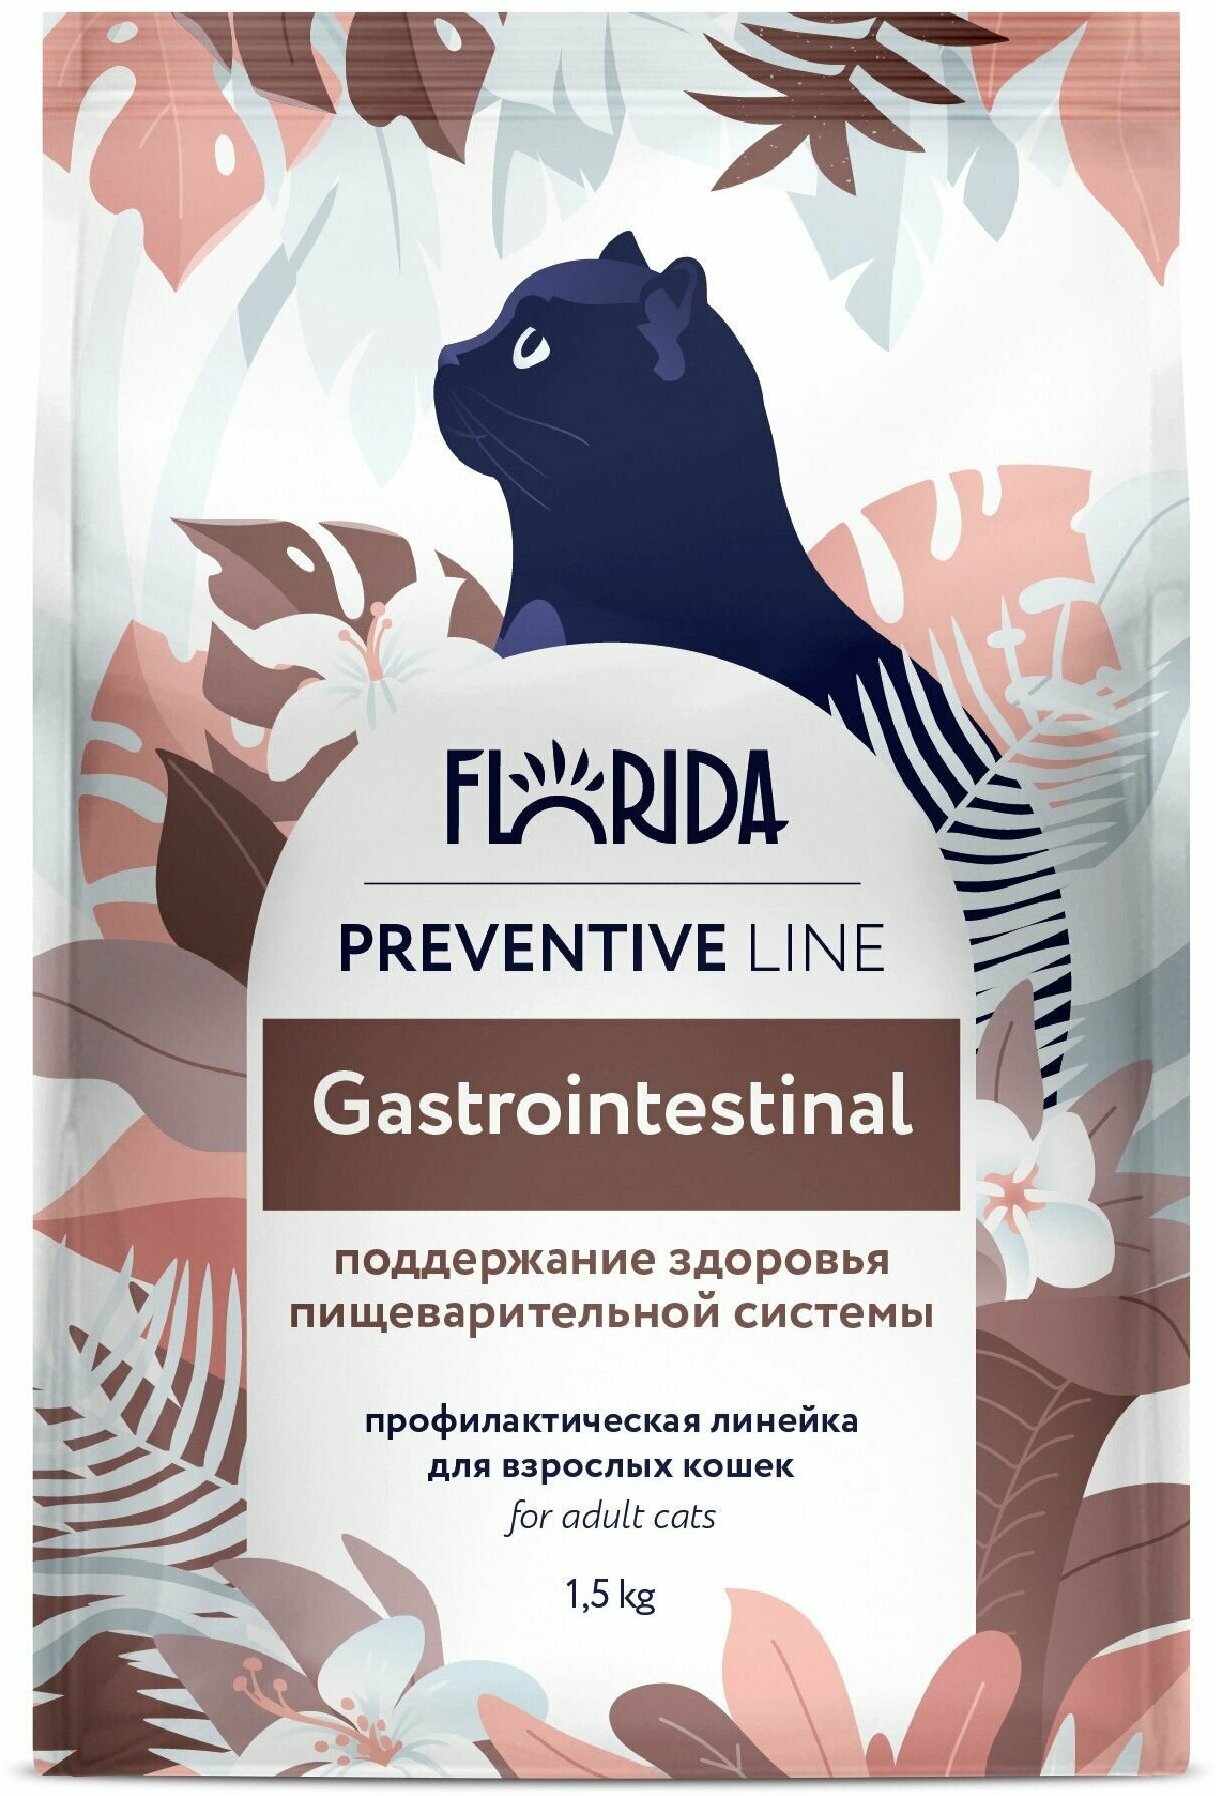 FLORIDA - Корм для кошек "поддержание здоровья пищеварительной системы" (gastrointestinal) 1.5кг